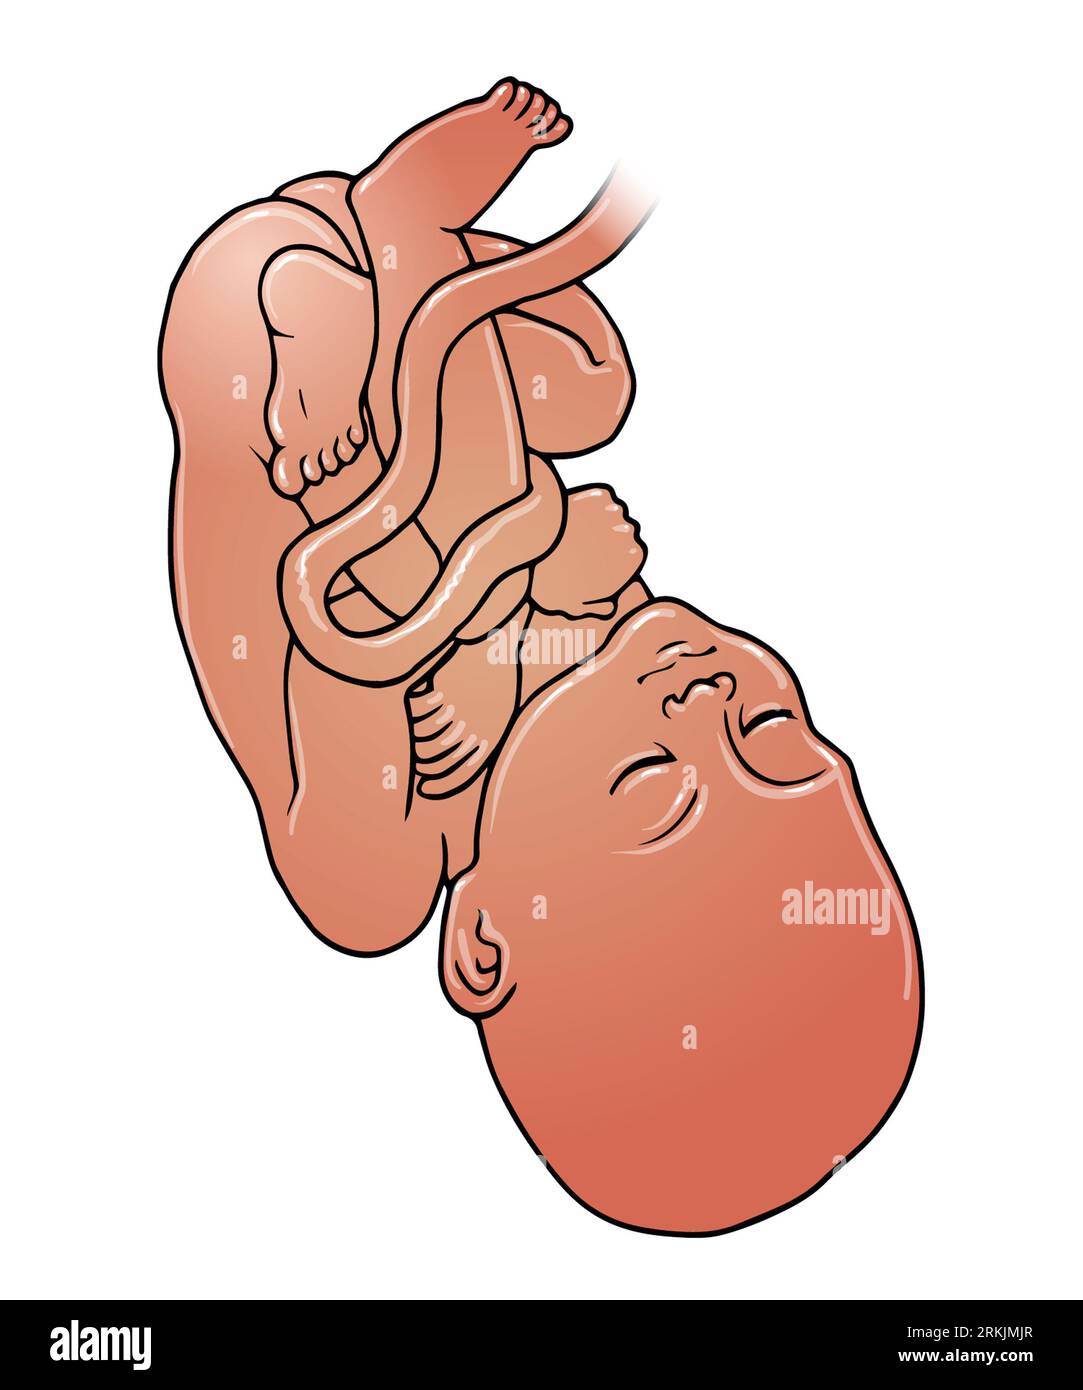 Illustrazione artistica di feto dalla pelle scura, bambino in posizione di parto cefalico, che può verificarsi tra 32-36 settimane, gravidanza, nascita del bambino Foto Stock